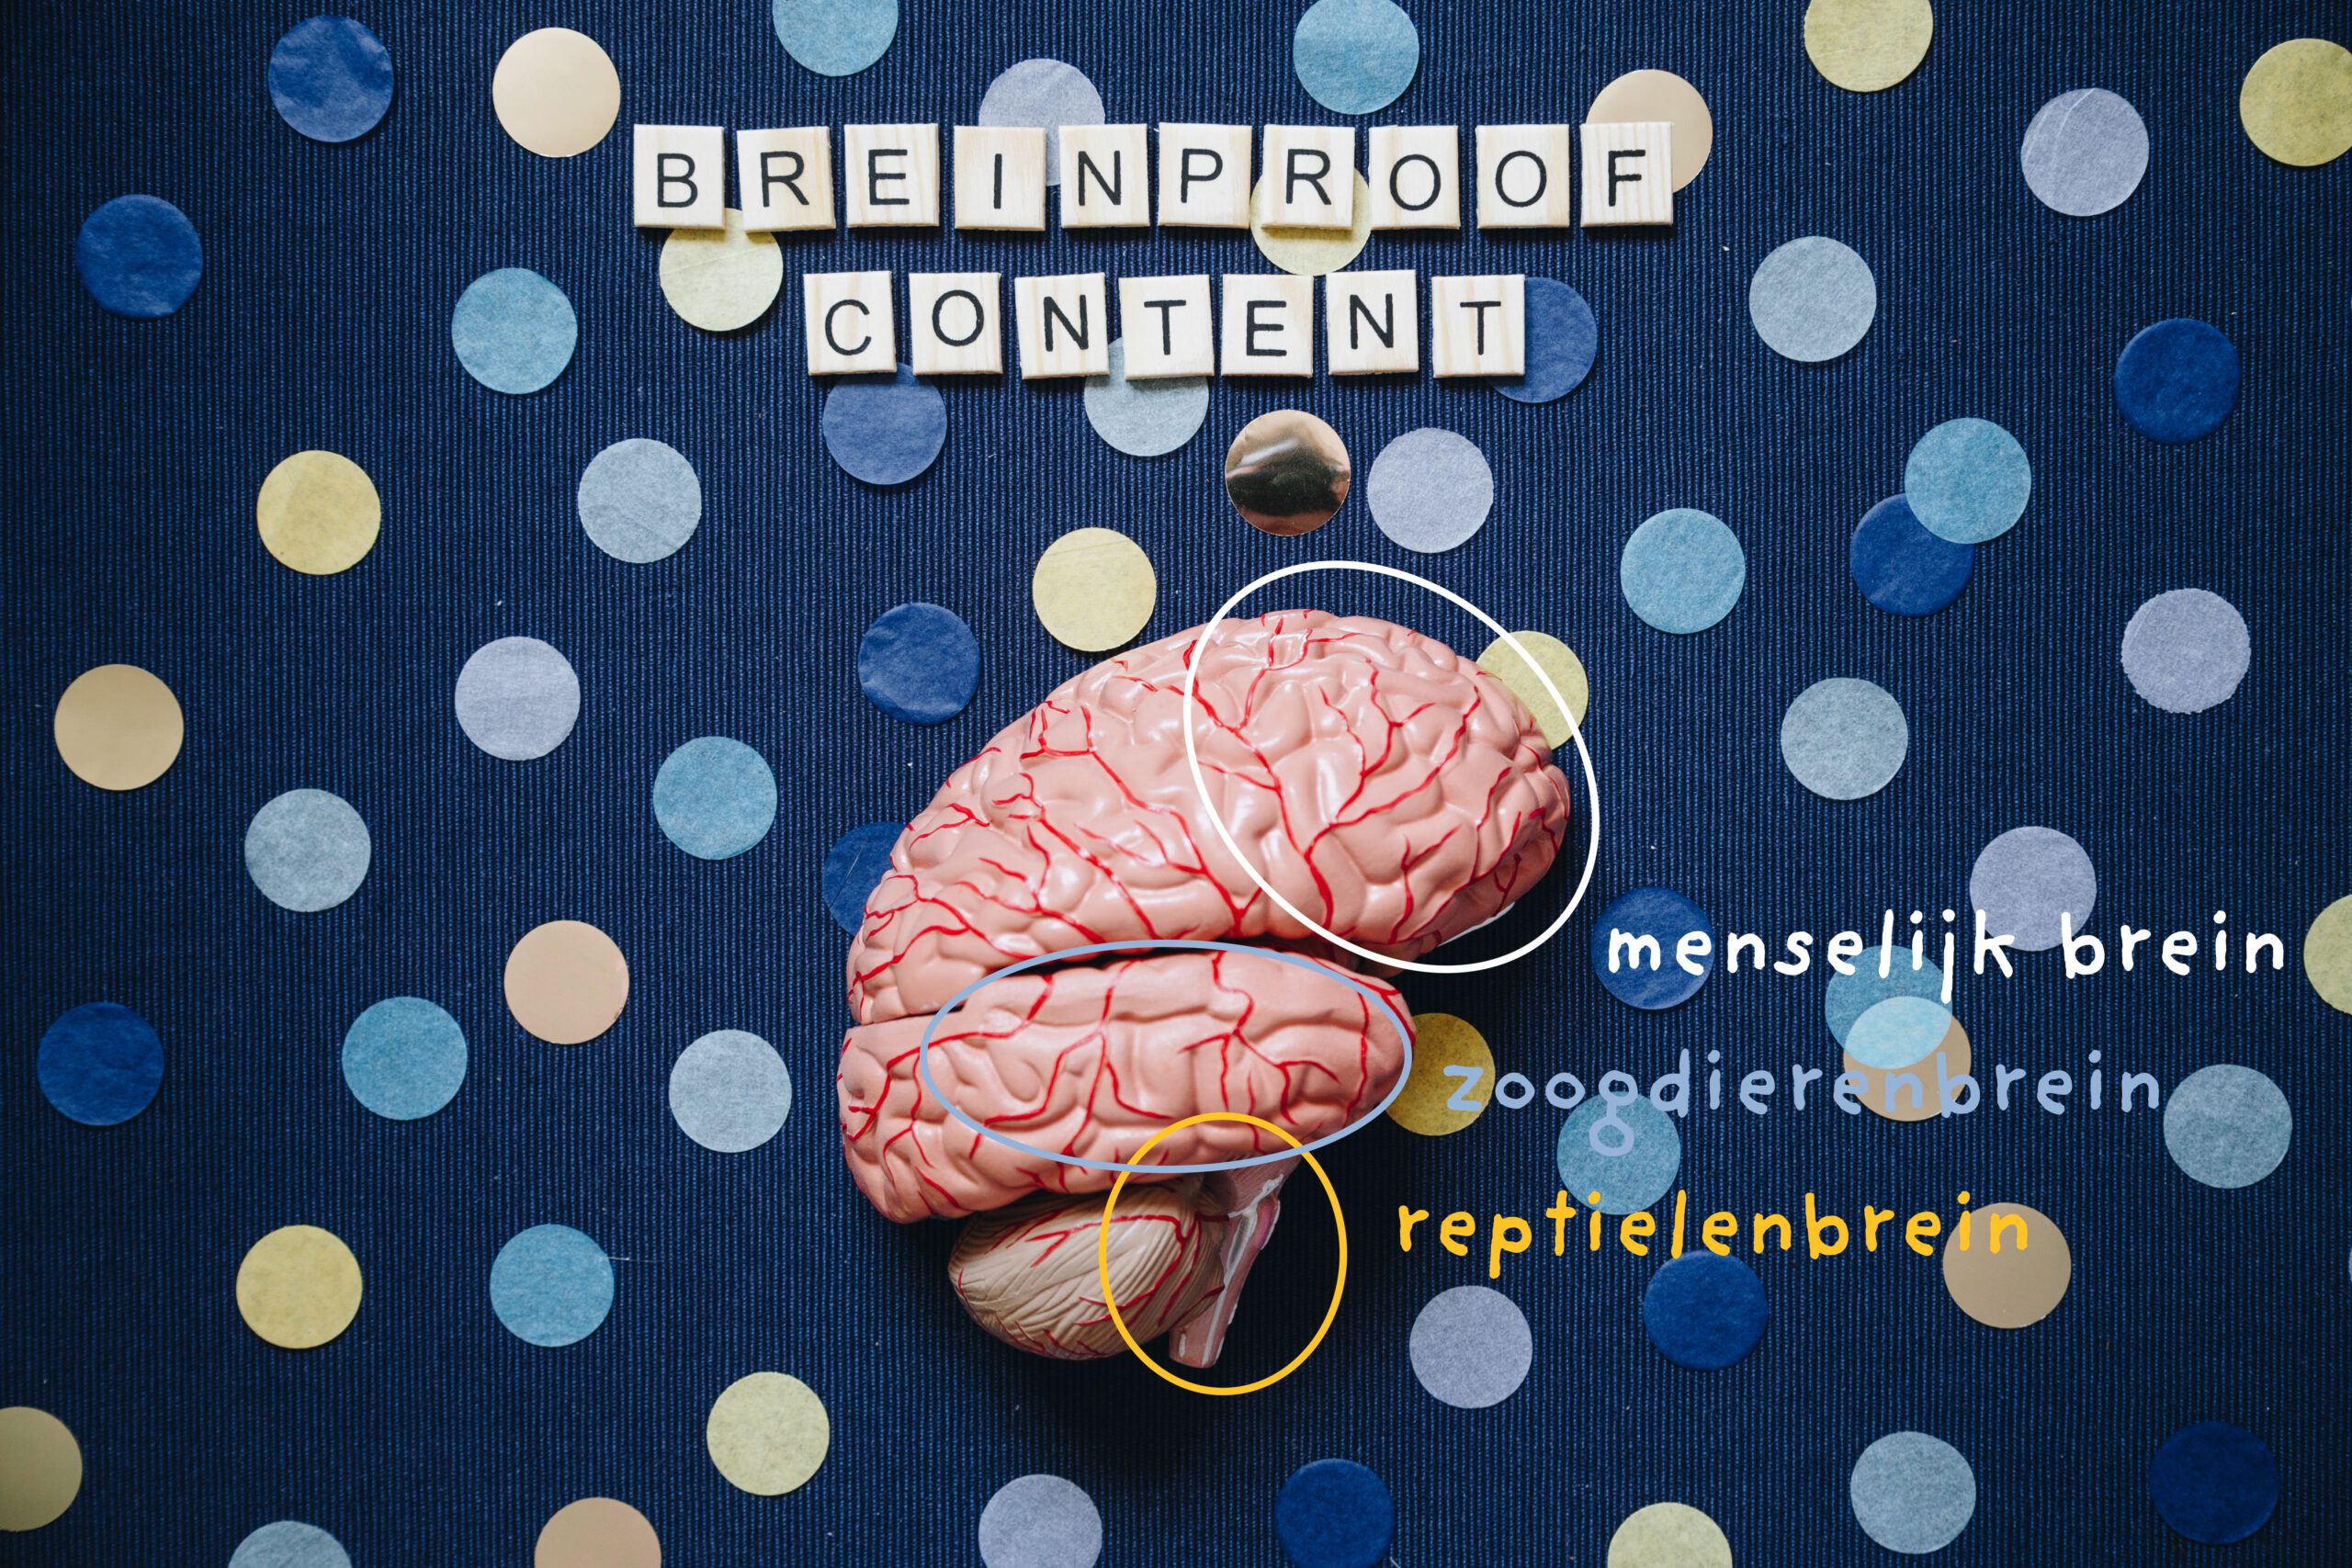 Flatlay foto van een hersenmodel met daarin aangegeven het reptielenbrein, het zoogdierenbrein en het menselijk brein